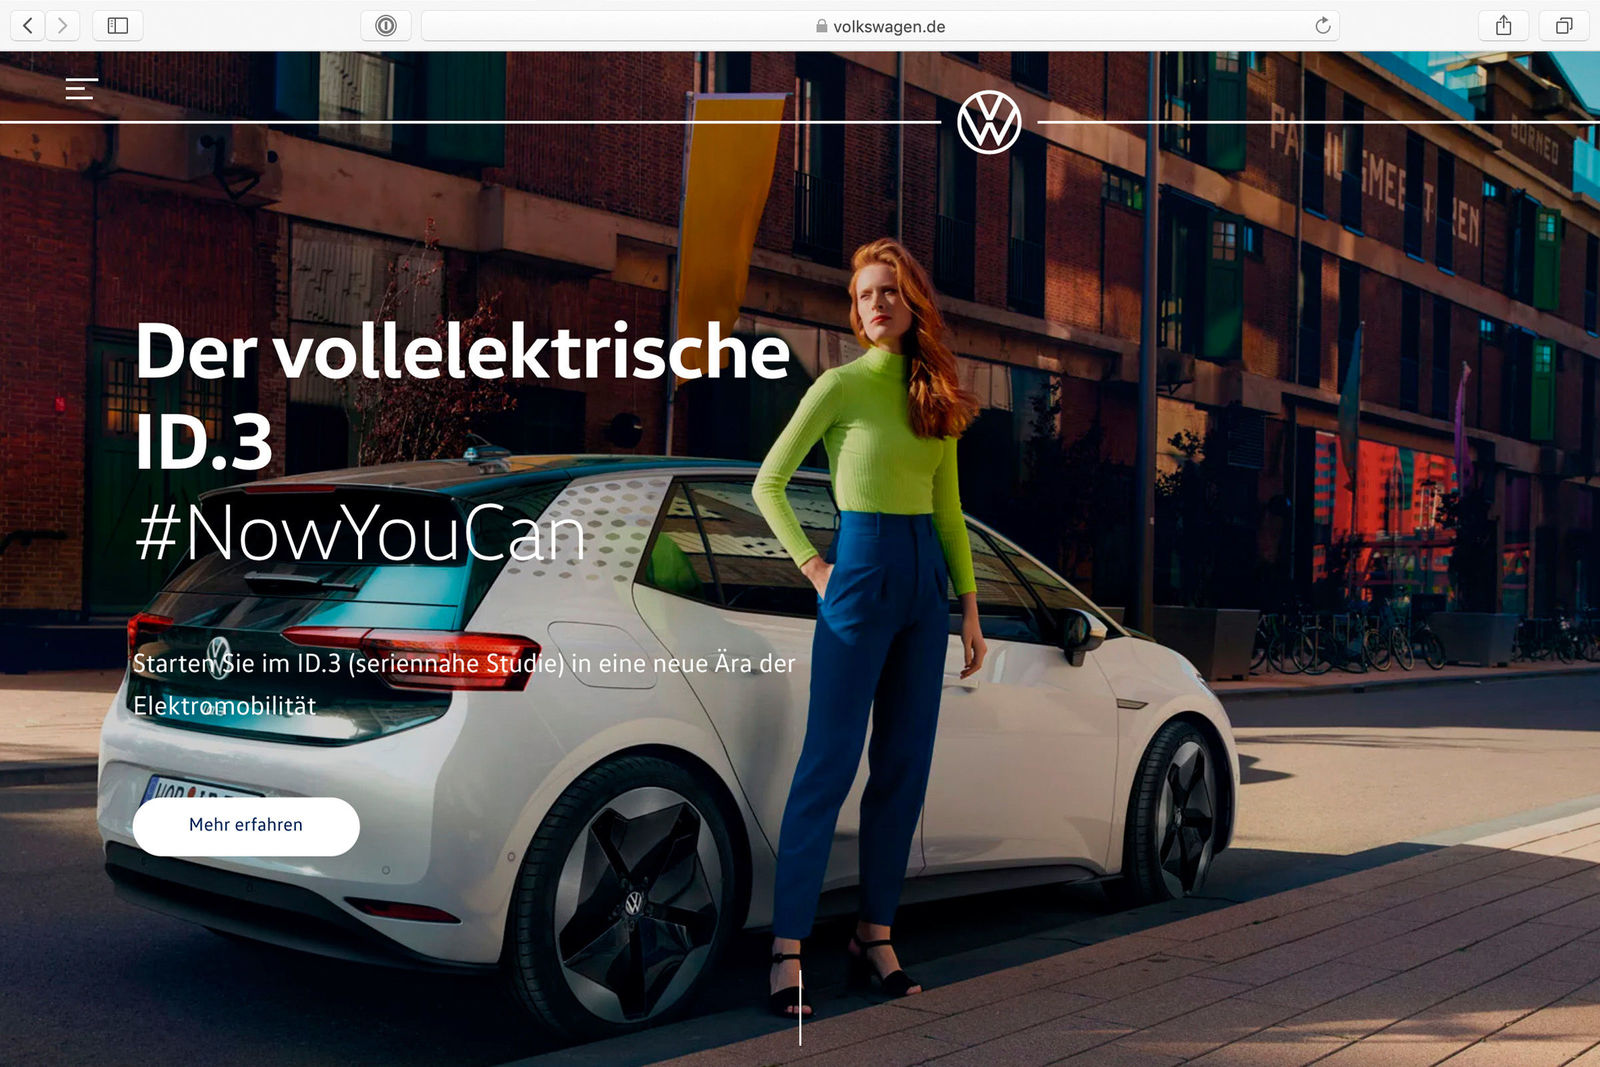 Marke Volkswagen launcht neue globale Website